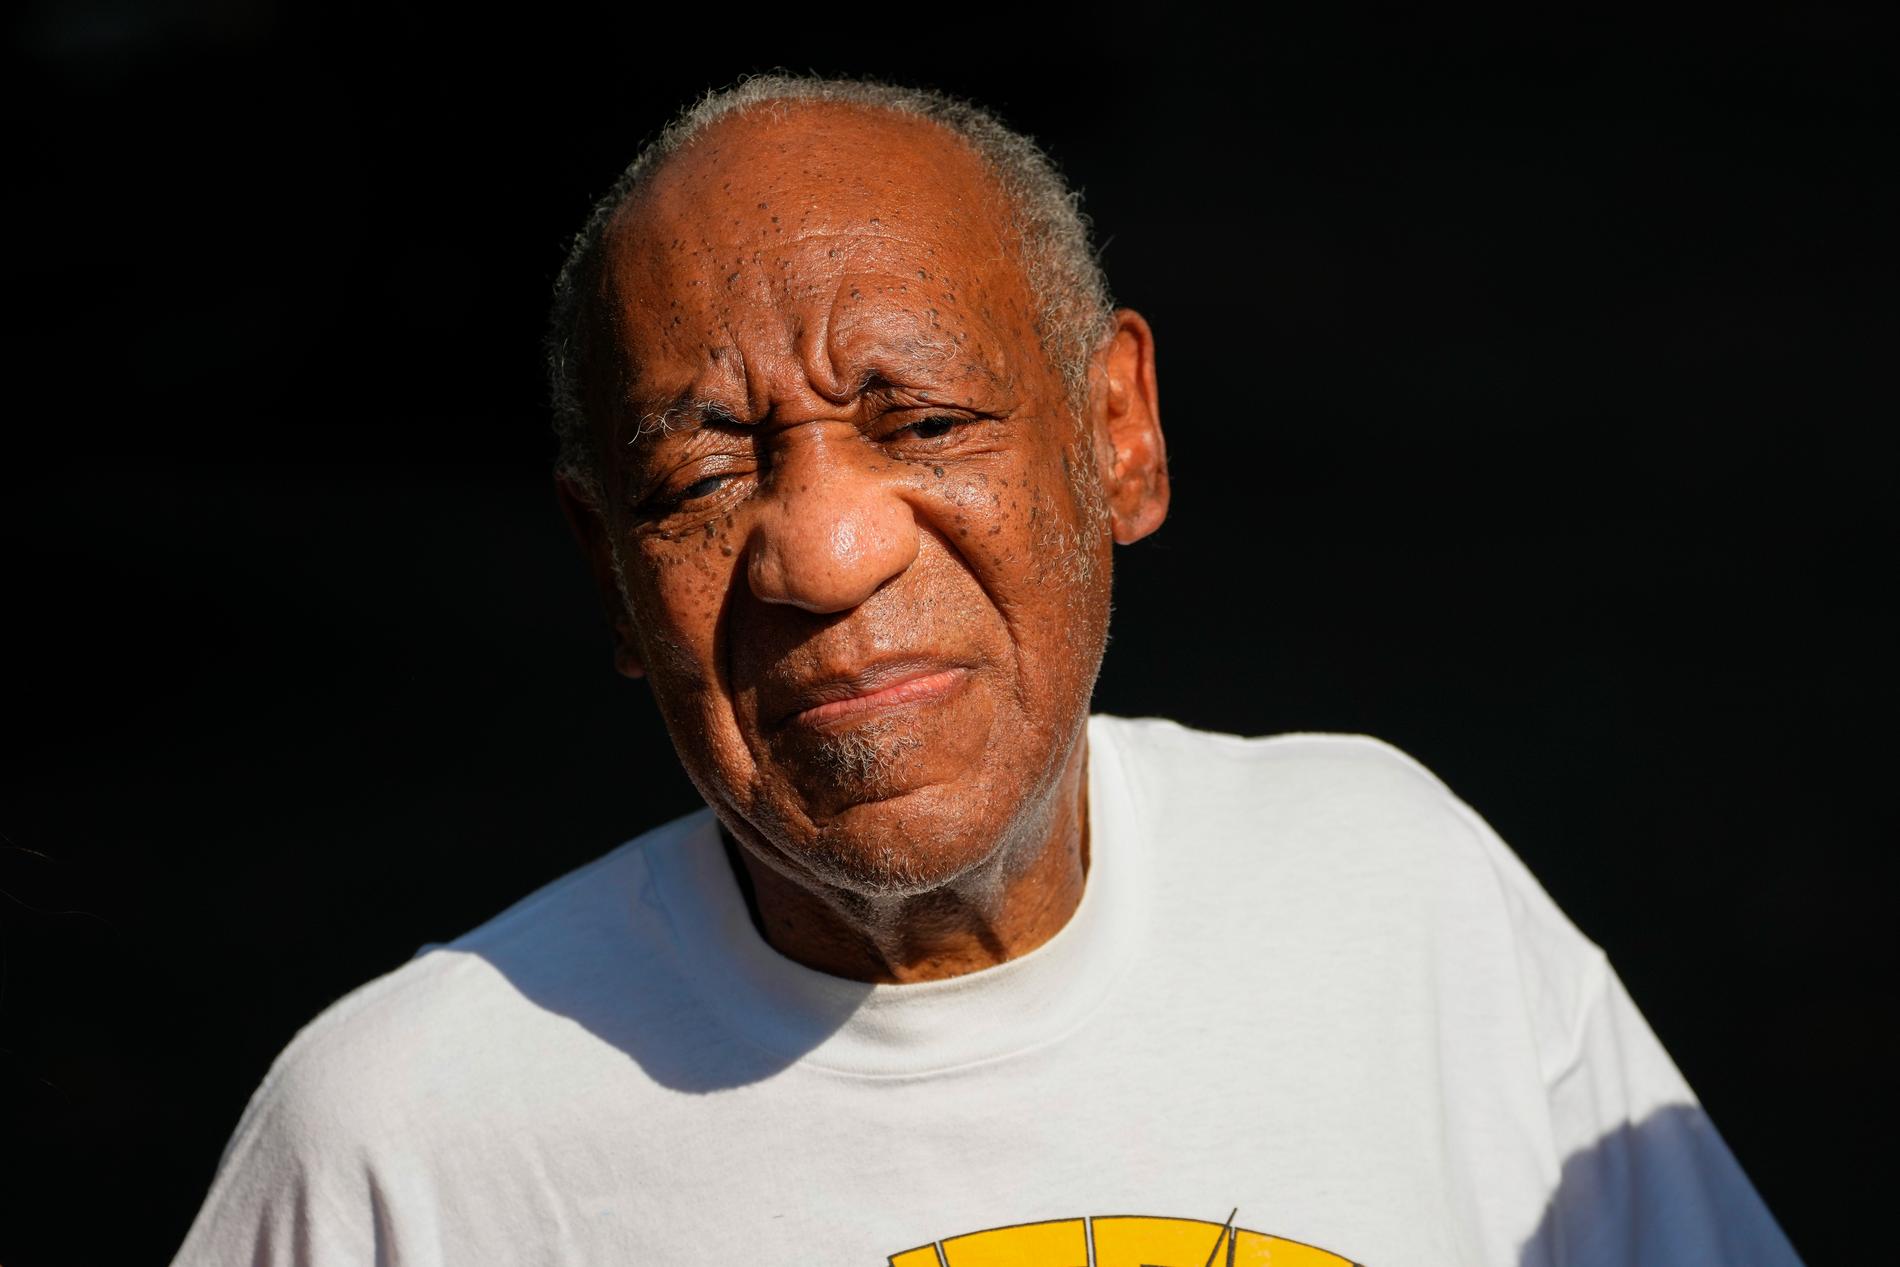 Bill Cosby nekar de nya anklagelserna om sexuella övergrepp.